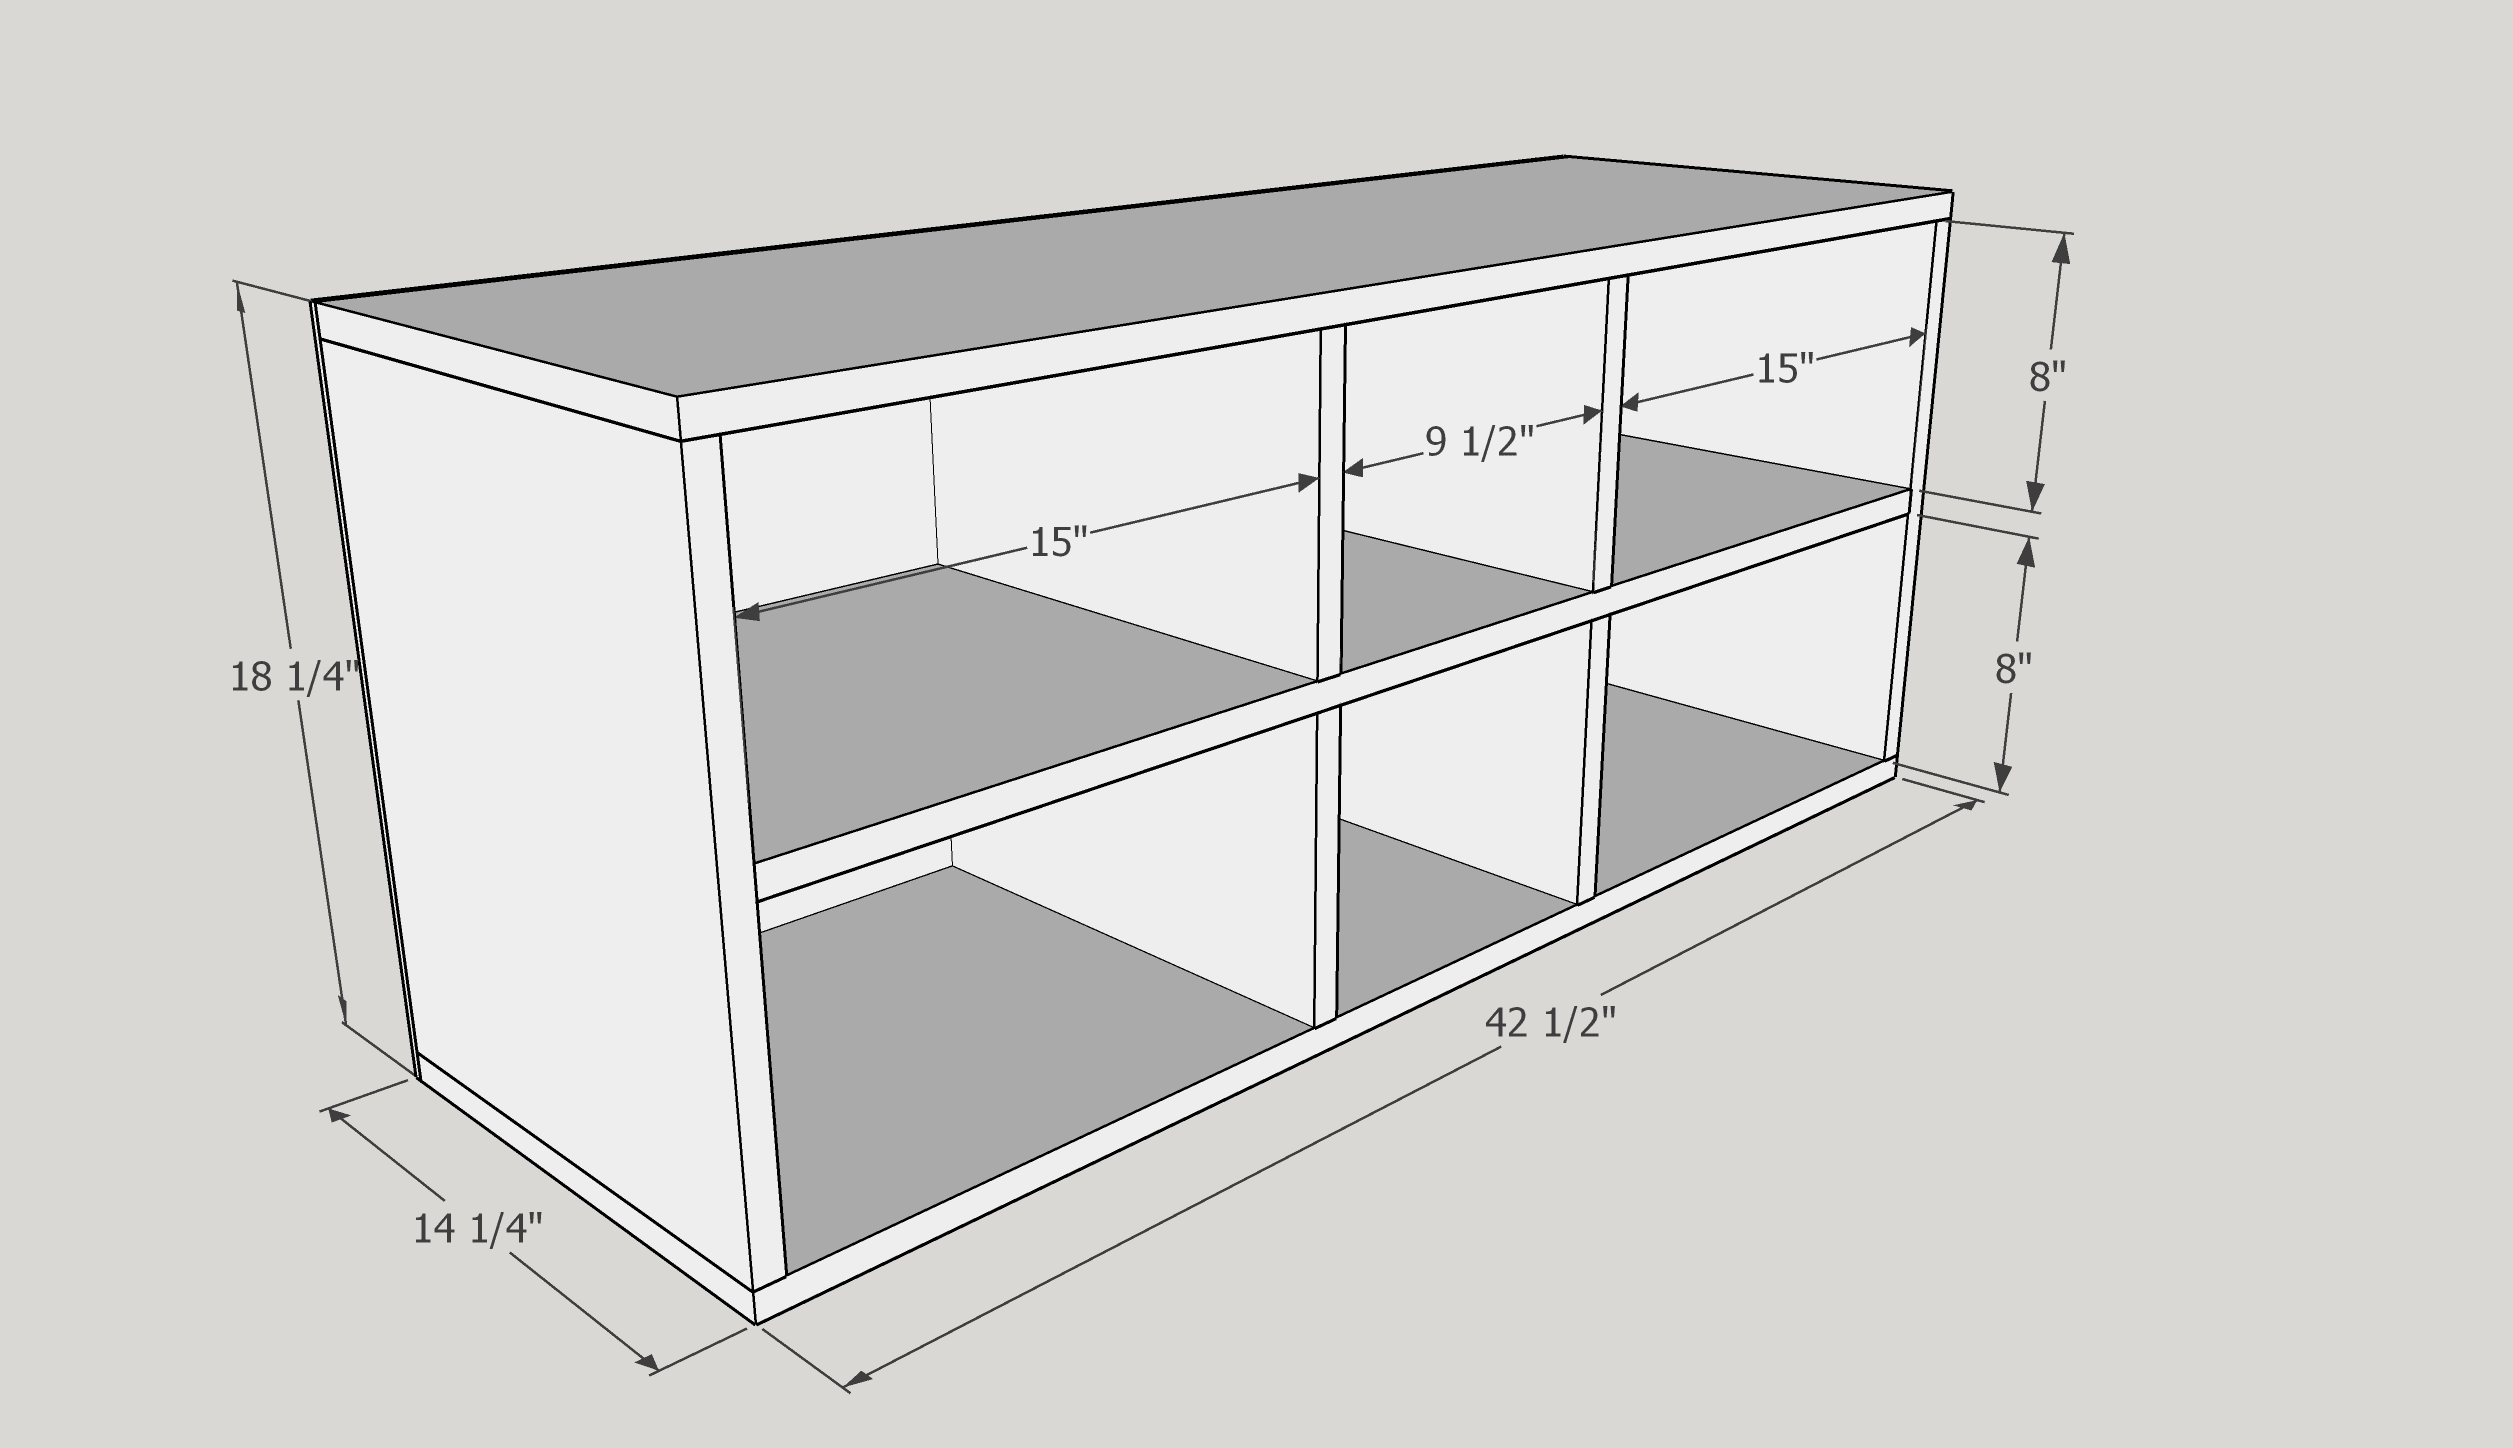 3D model of shelves for DIY built in entertainment center